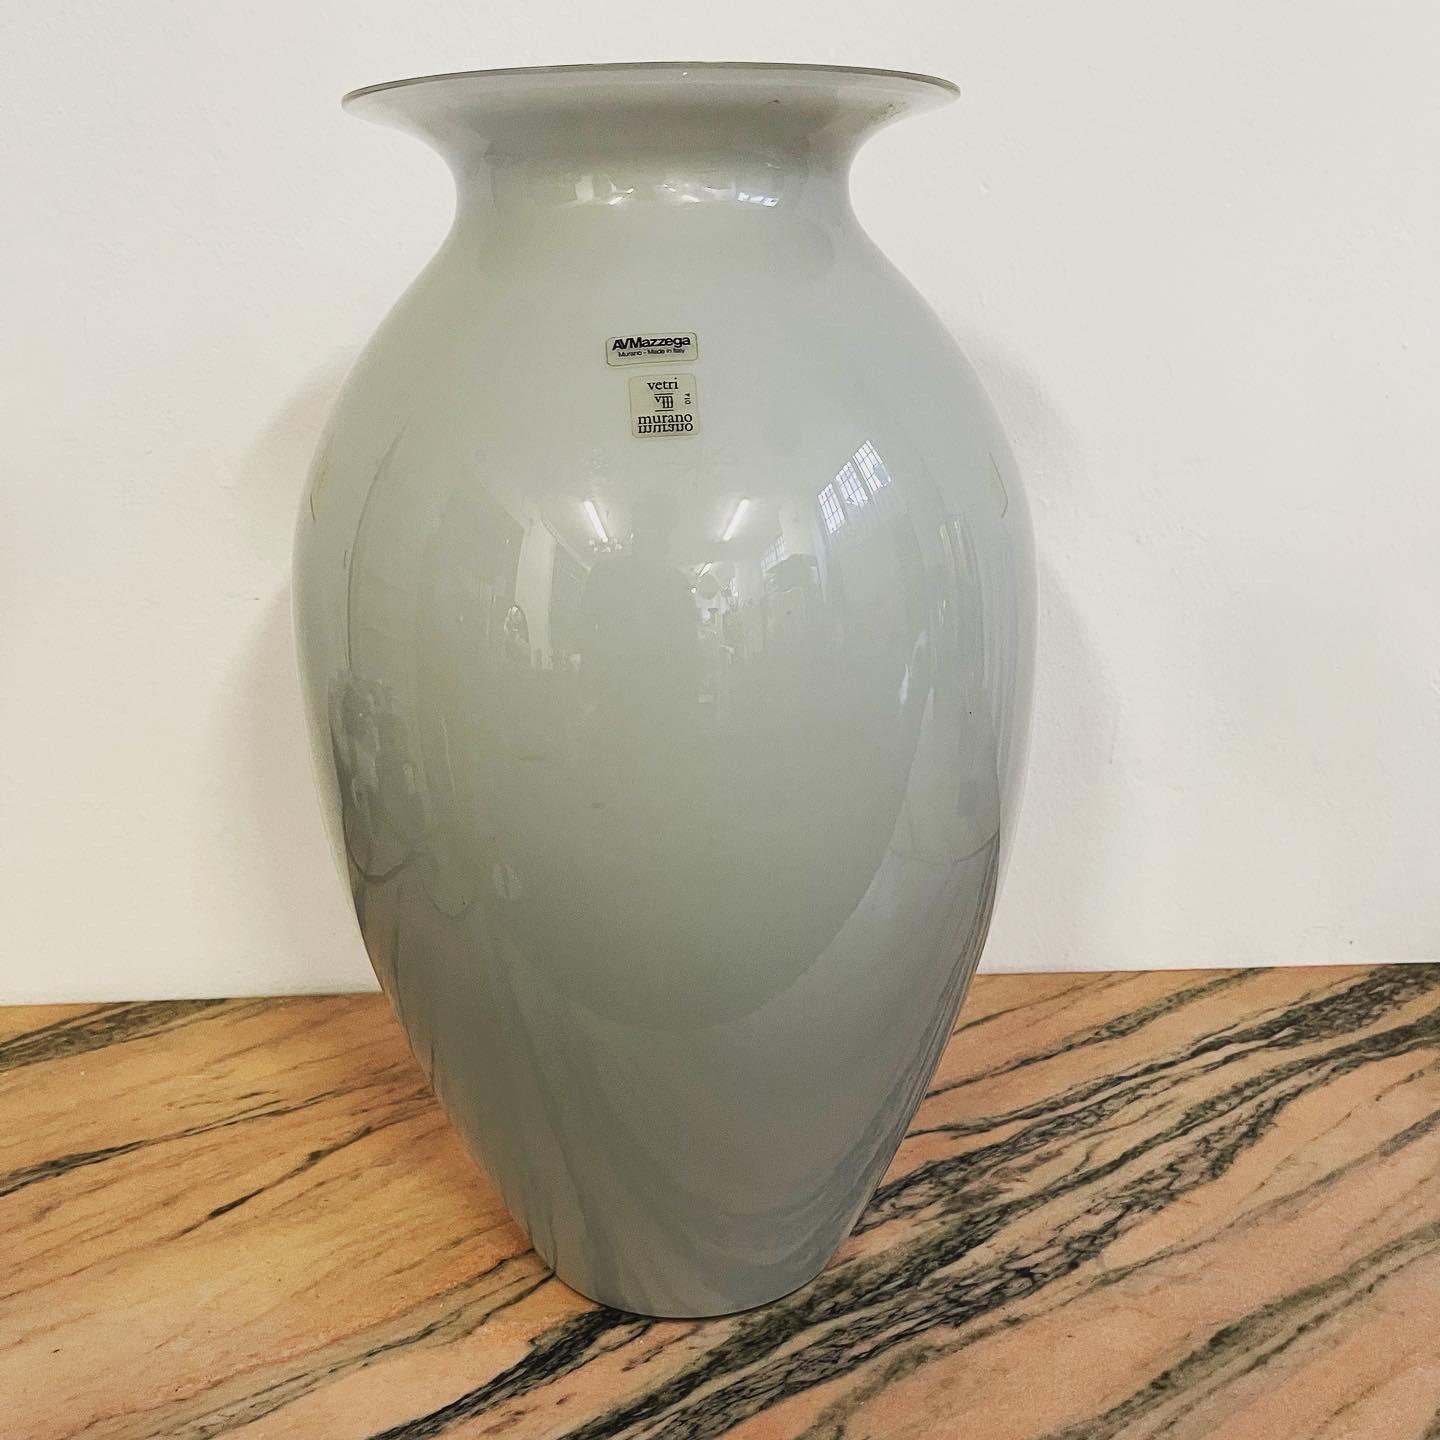 L'élégant vase en verre opalin gris de la verrerie de Murano AVMazzega est une splendide œuvre d'art en verre, réalisée en verre opalin de haute qualité. Le vase est de grande taille, ce qui lui confère une présence imposante dans n'importe quelle